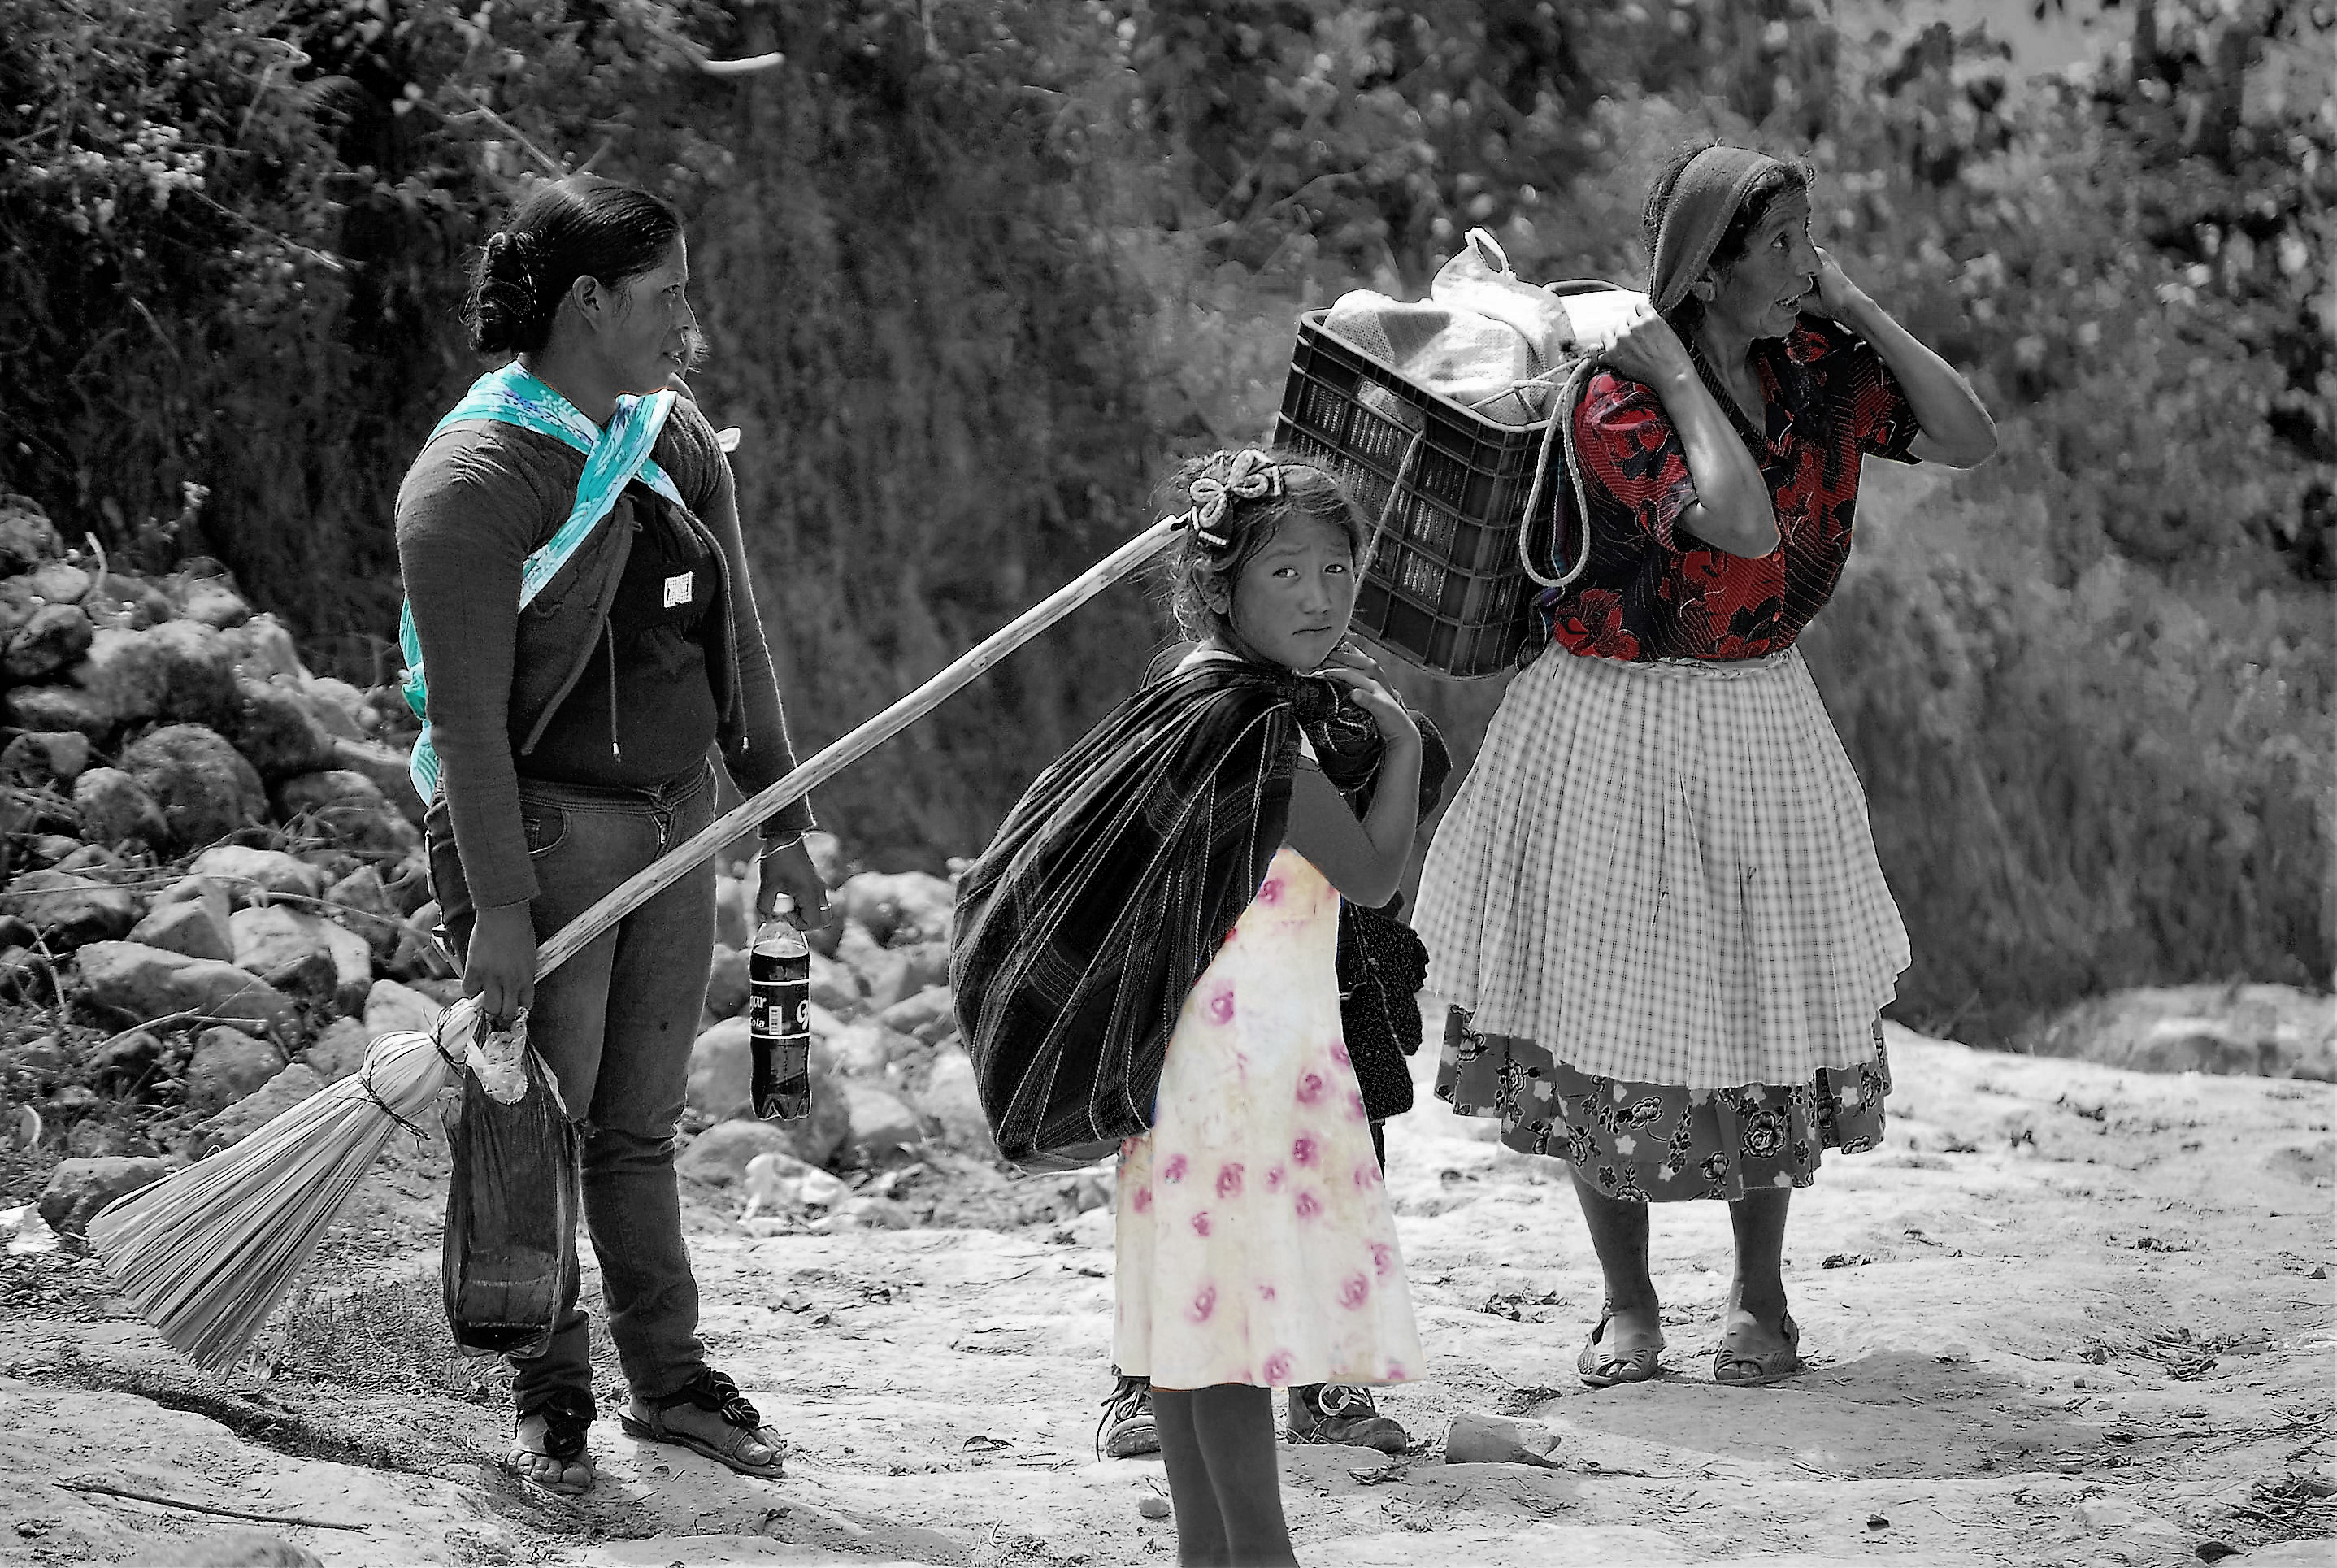 Las mujeres y las niñas chiapanecas siguen viviendo en una profunda desigualdad